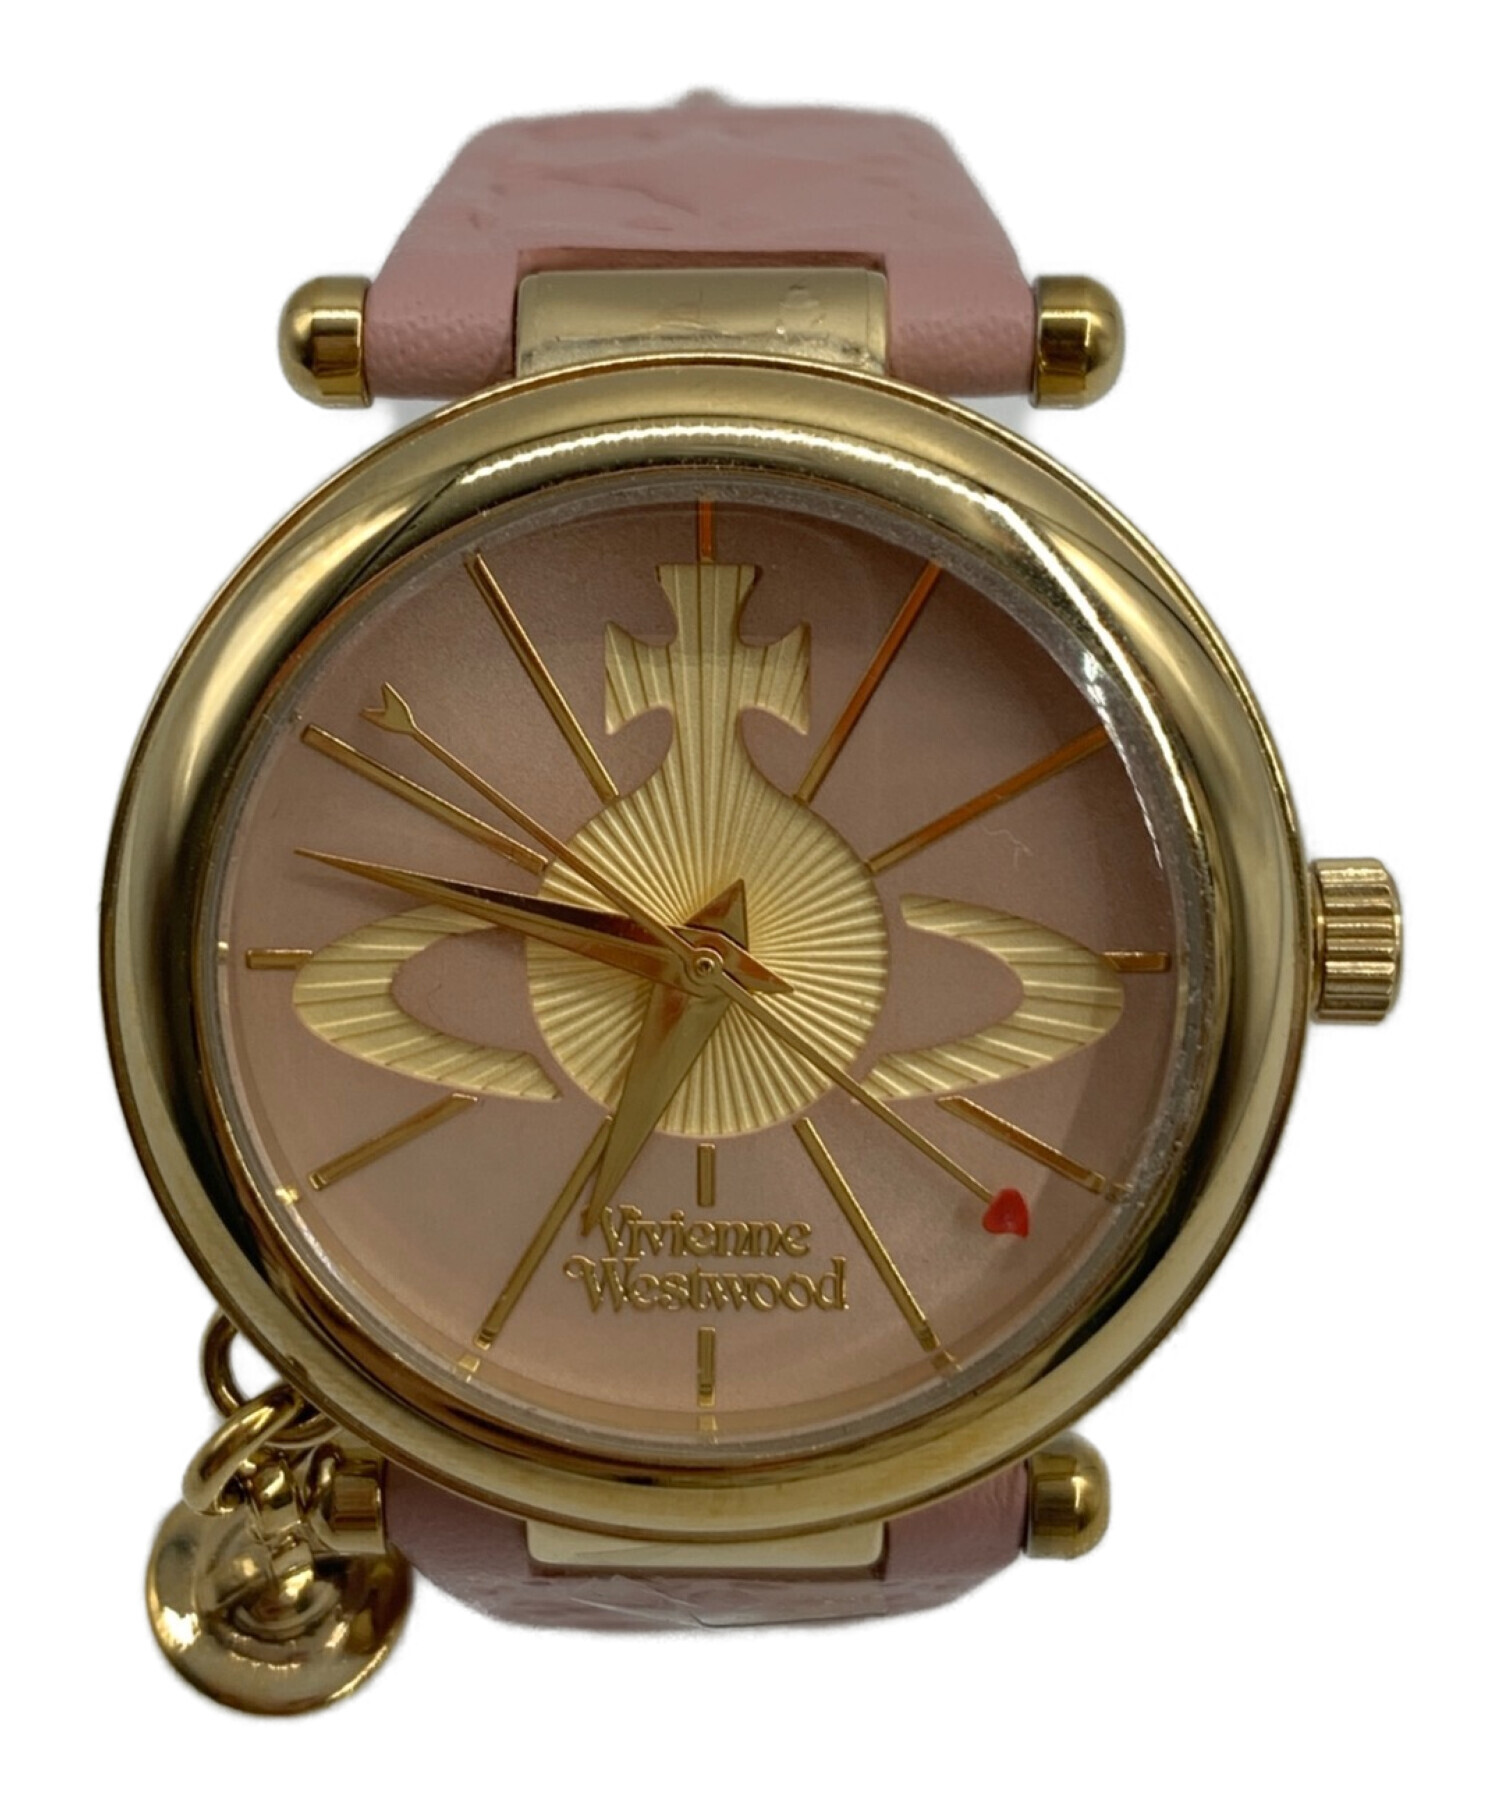 Vivienne Westwood (ヴィヴィアンウエストウッド) 腕時計